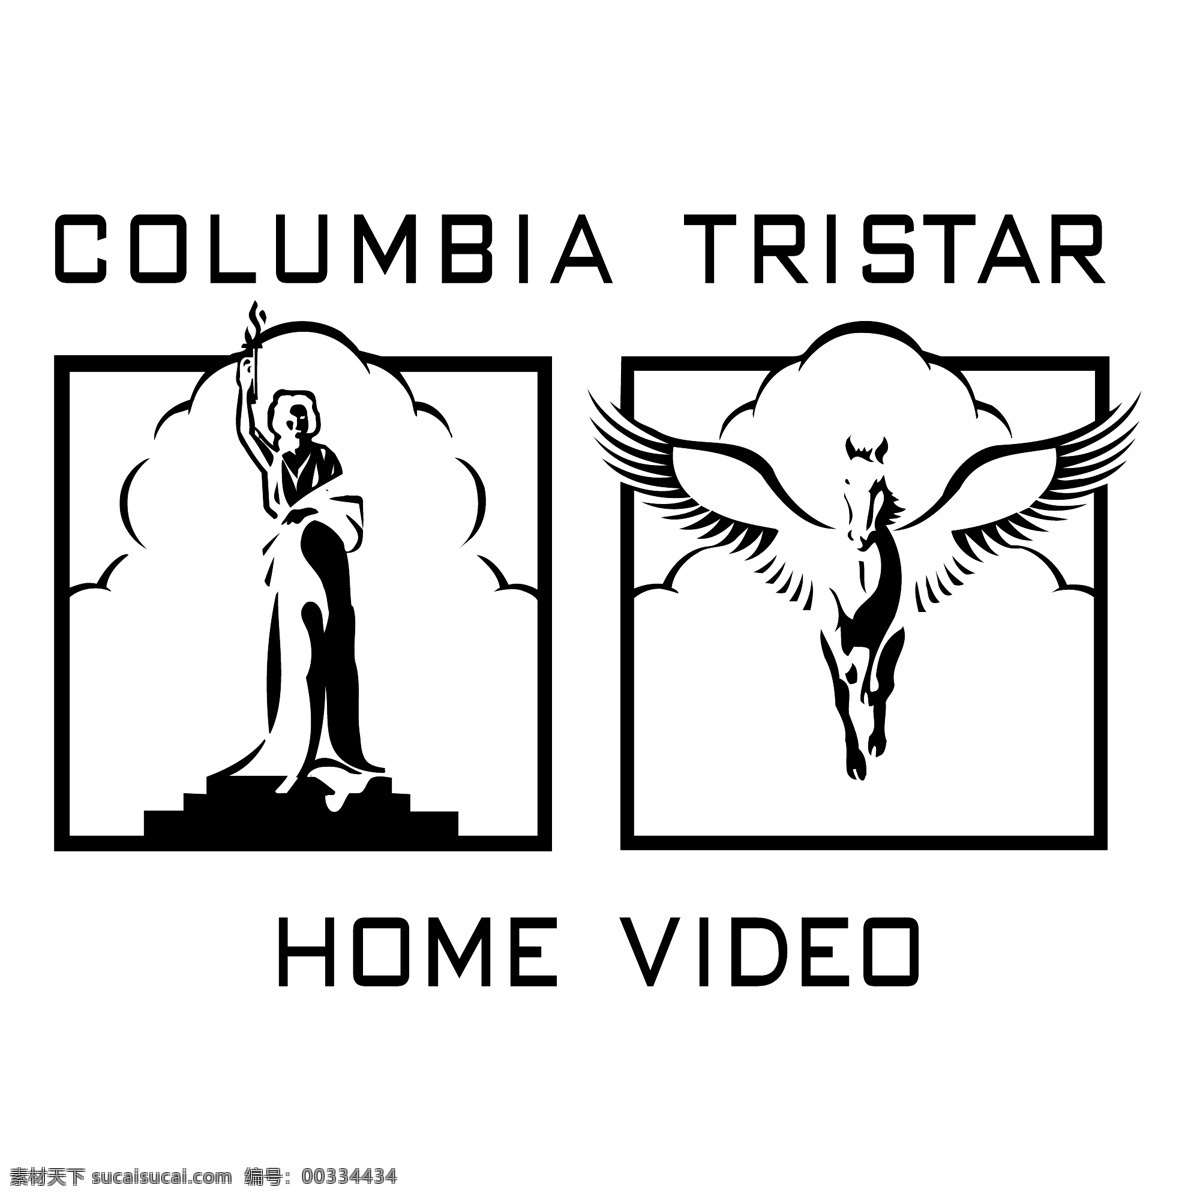 哥伦比亚 三星 哥伦比亚三星 标志 标识 向量 矢量 图形 电影 公司 建筑家居